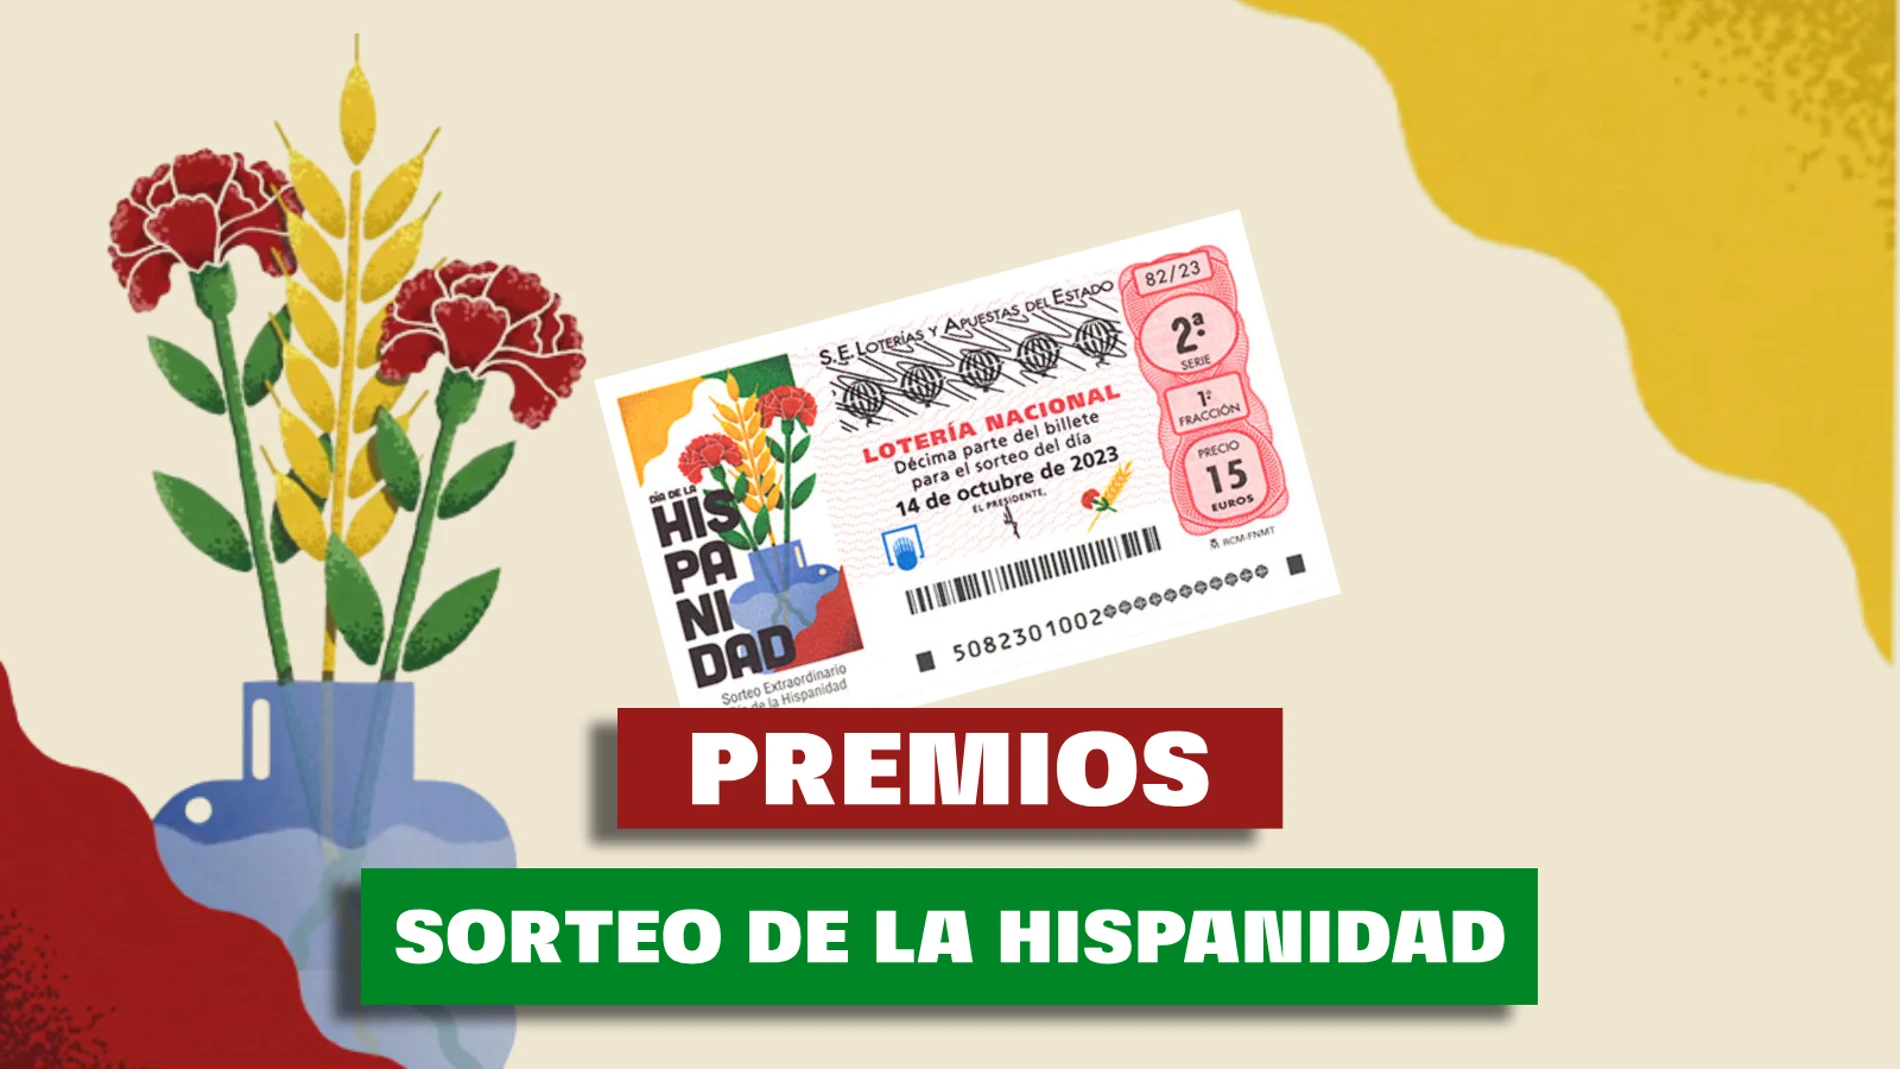 Estos son los premios del Sorteo de la Hispanidad, el extraordinario de la Lotería Nacional del 14 de octubre